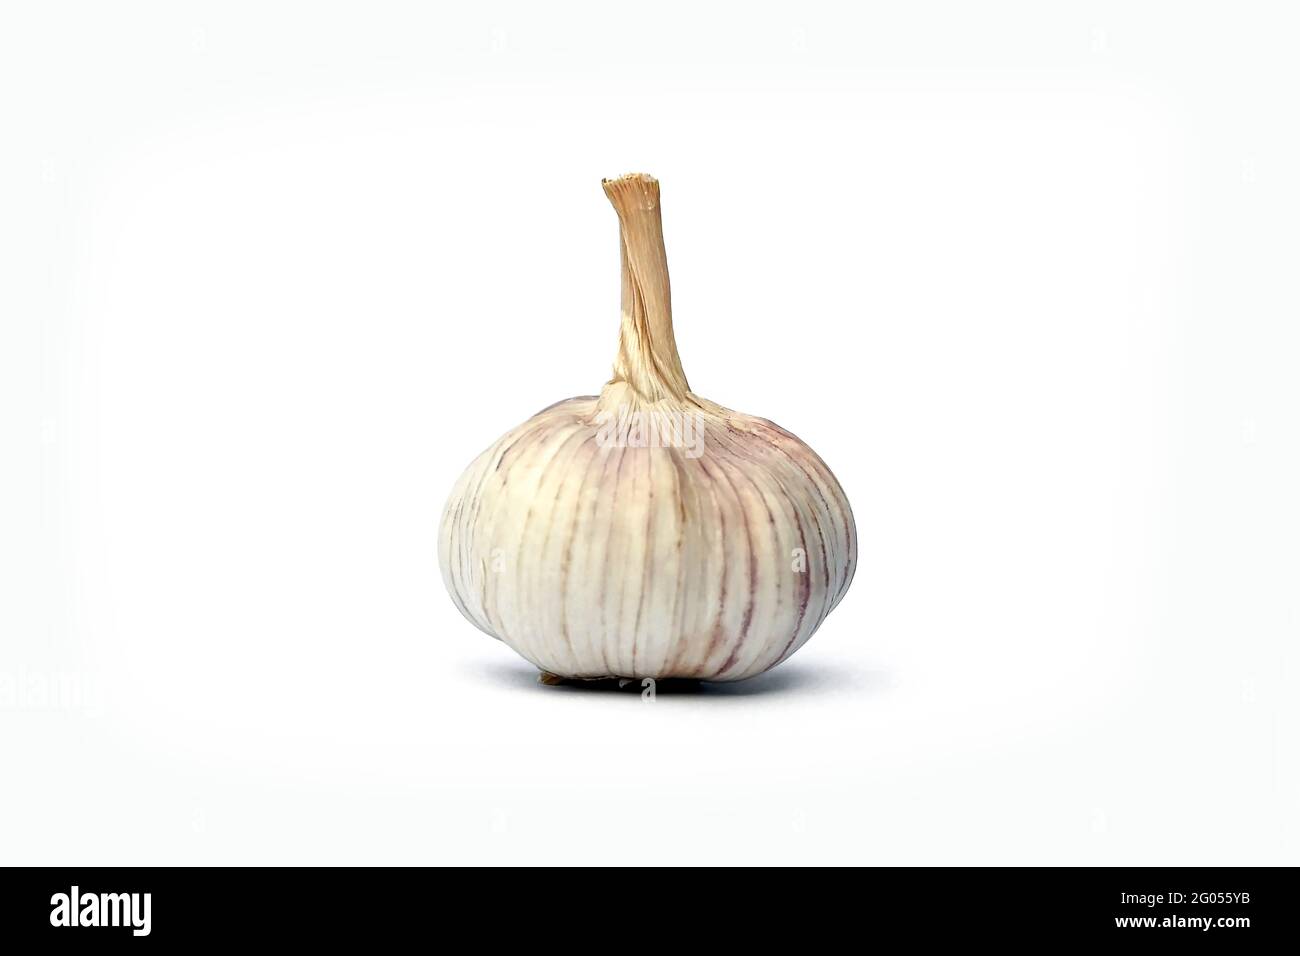 Raw garlic isolated on white background. Stock Photo